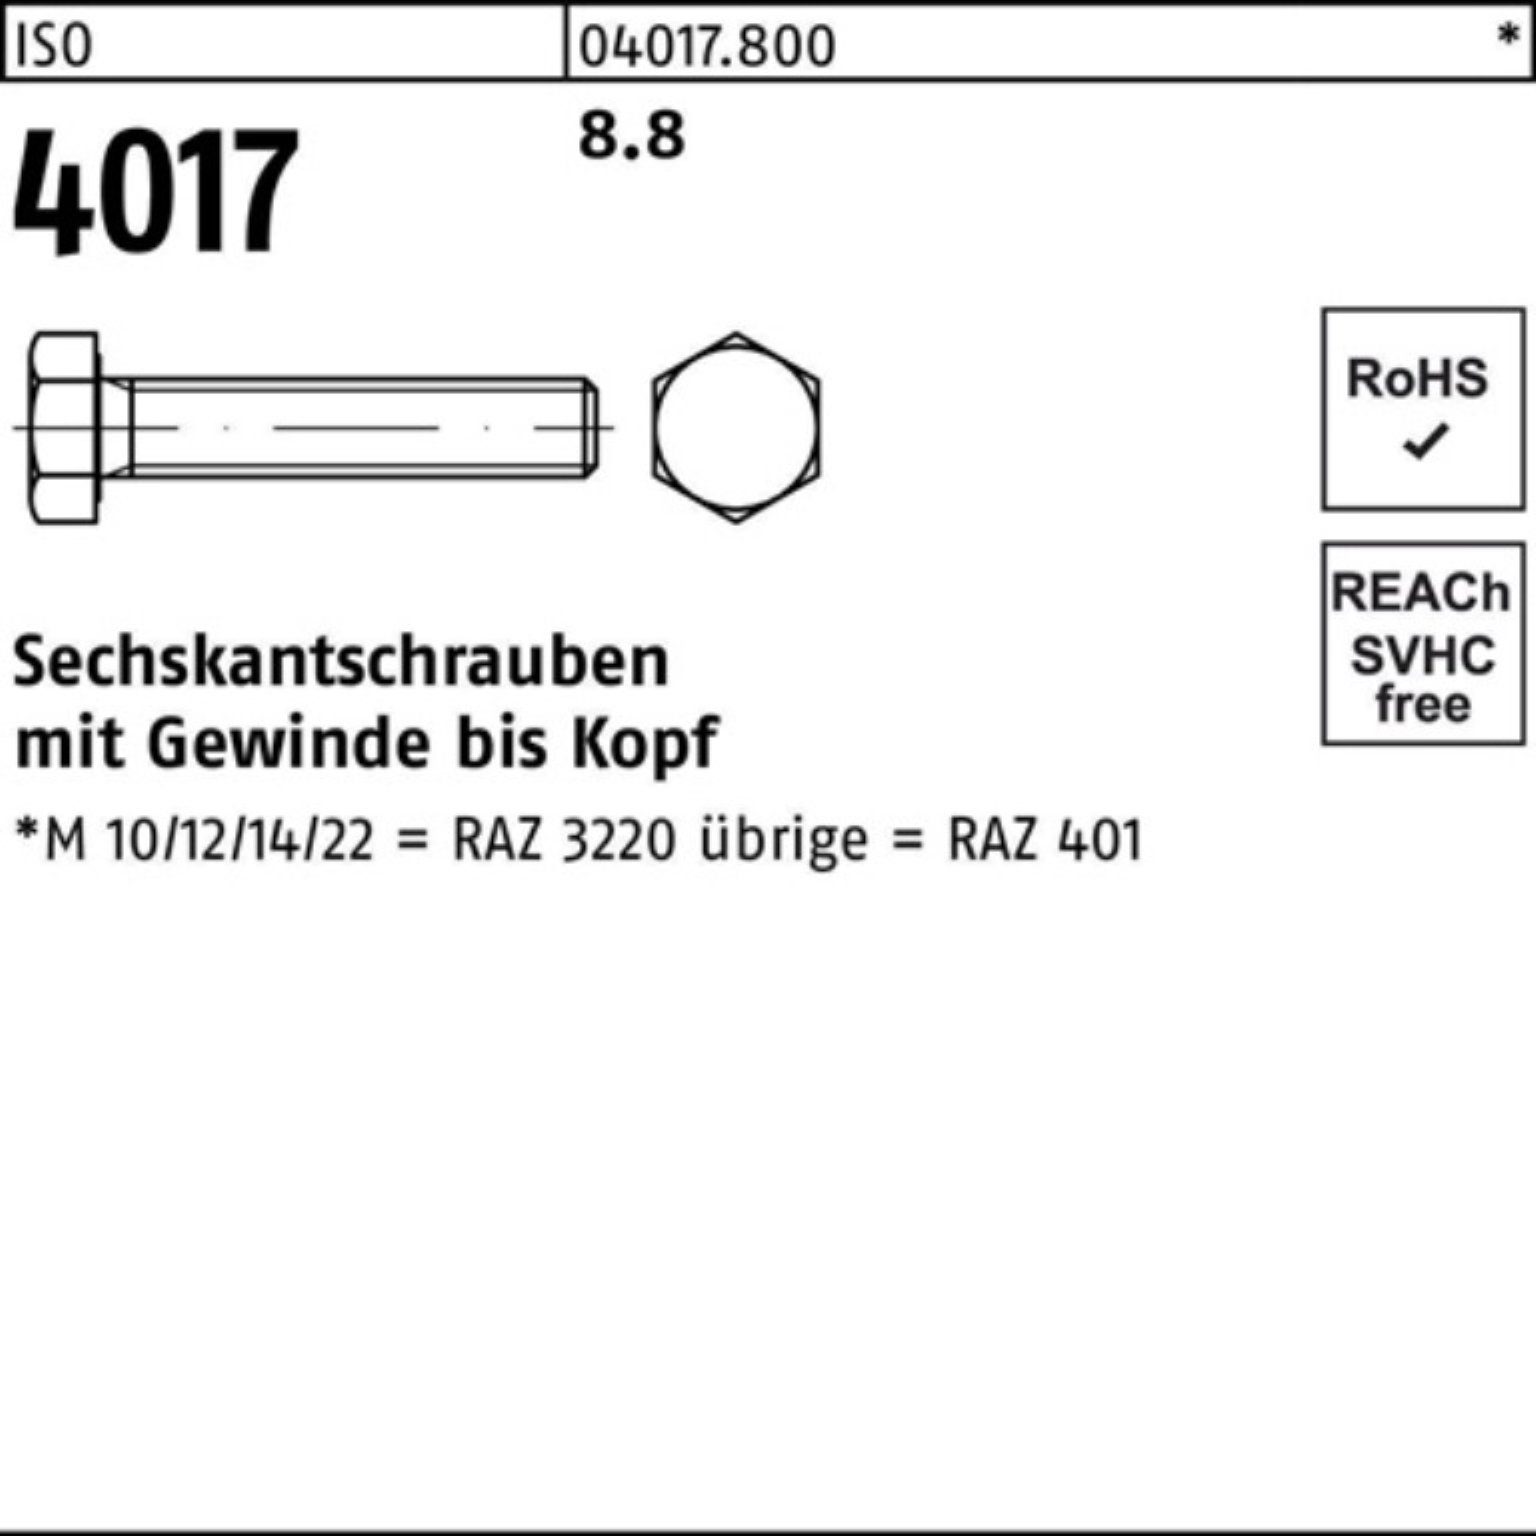 Bufab Sechskantschraube 100er Pack Sechskantschraube Stück 8.8 4017 40 ISO ISO 1 M33x VG 4017